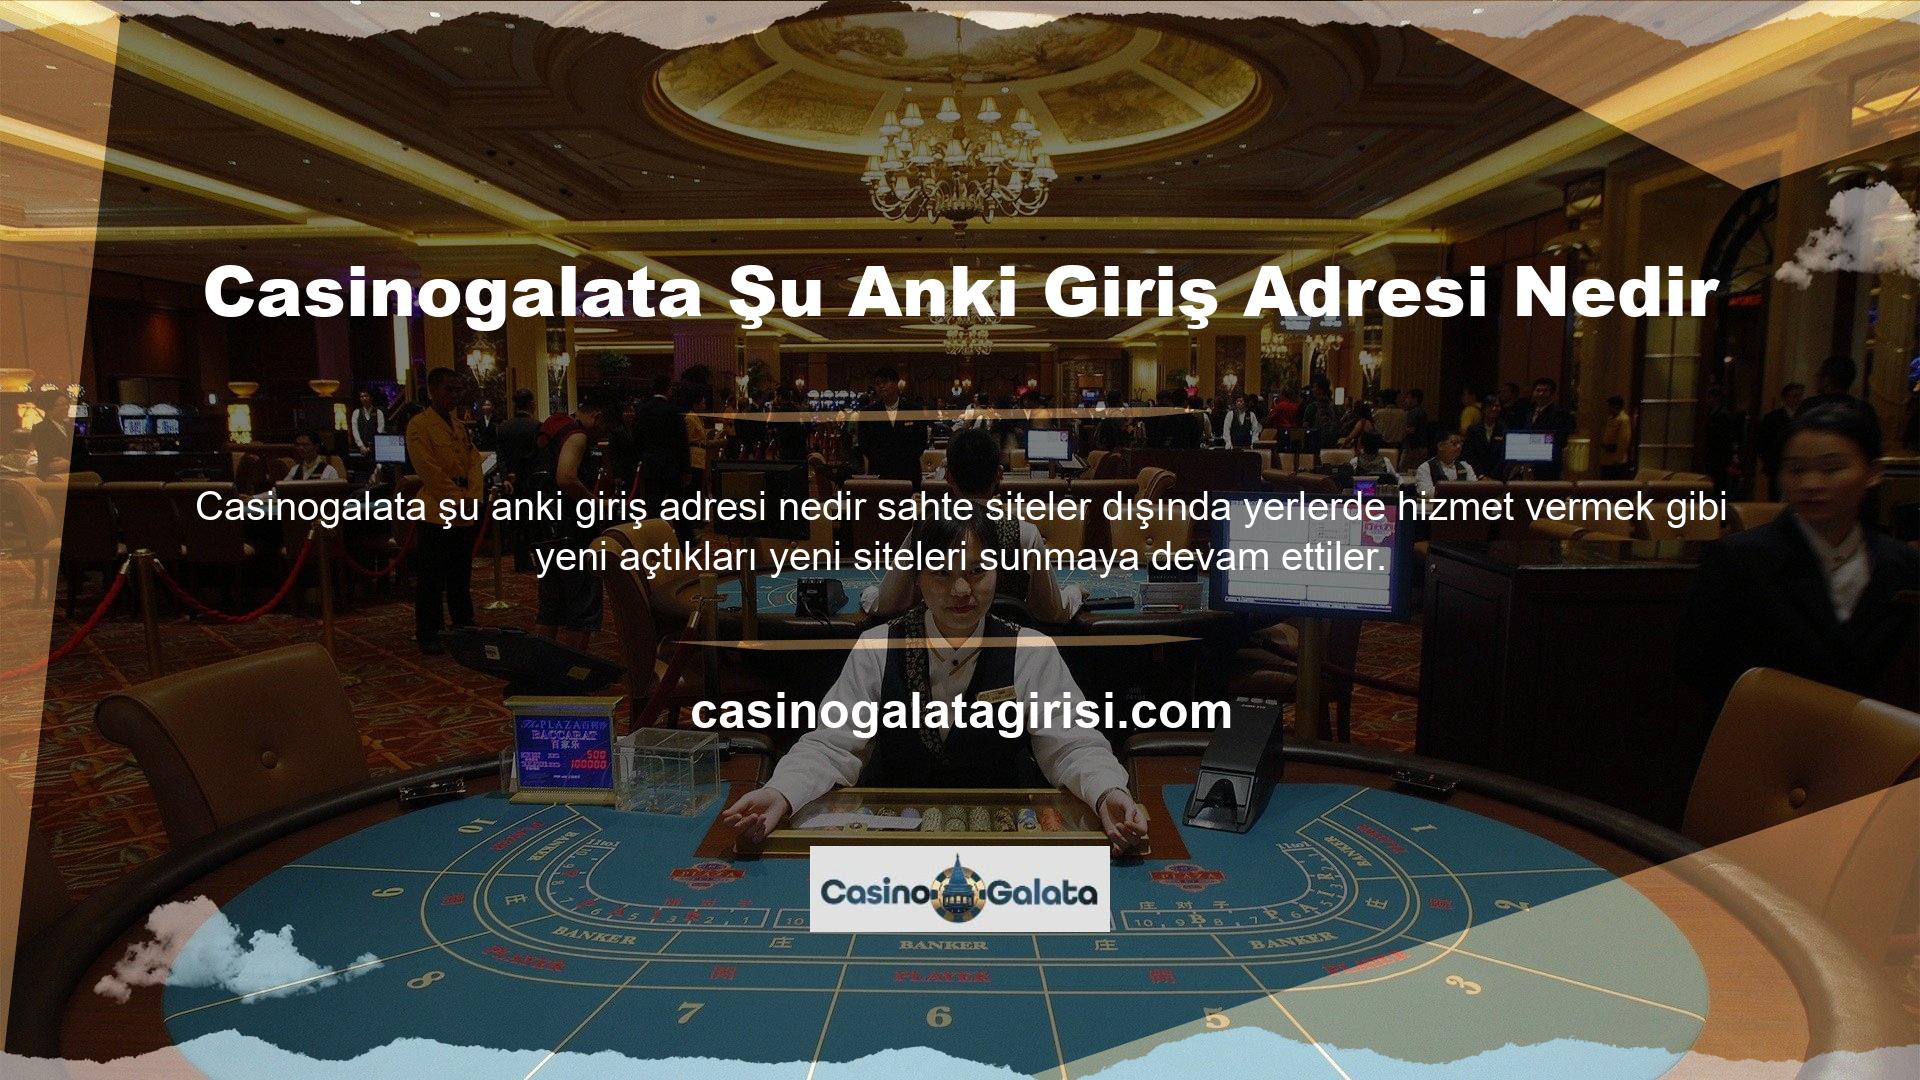 Casinogalata, bahisçileri sosyal medya hesaplarında yeni bir giriş adresi ile kayıt olmamaları konusunda uyarmak için bu adresi çeşitli seçeneklerle kullanıcılara sağlayacaktır